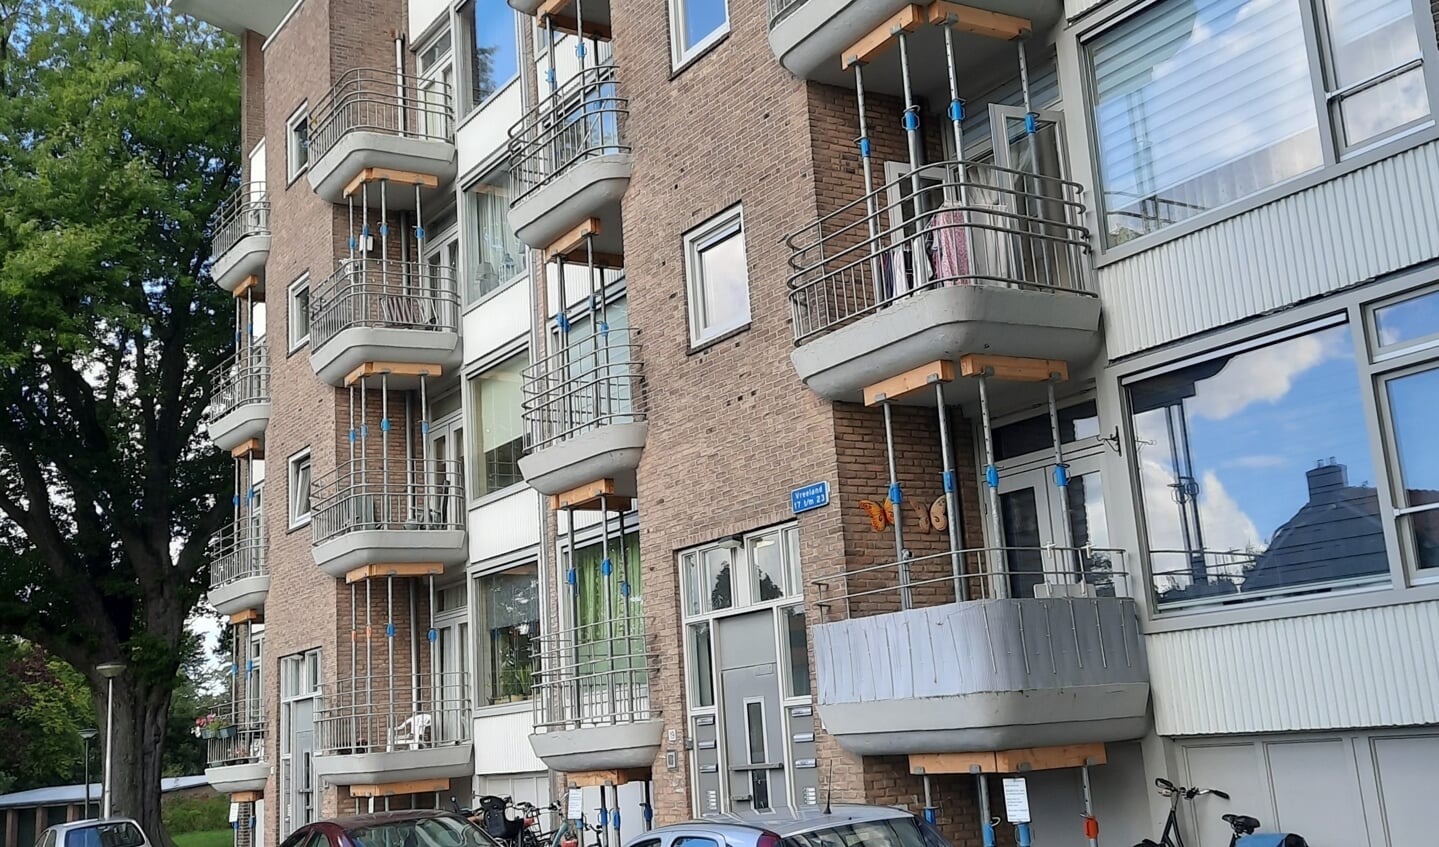 Flats aan Vreeland met gestutte balkons. 